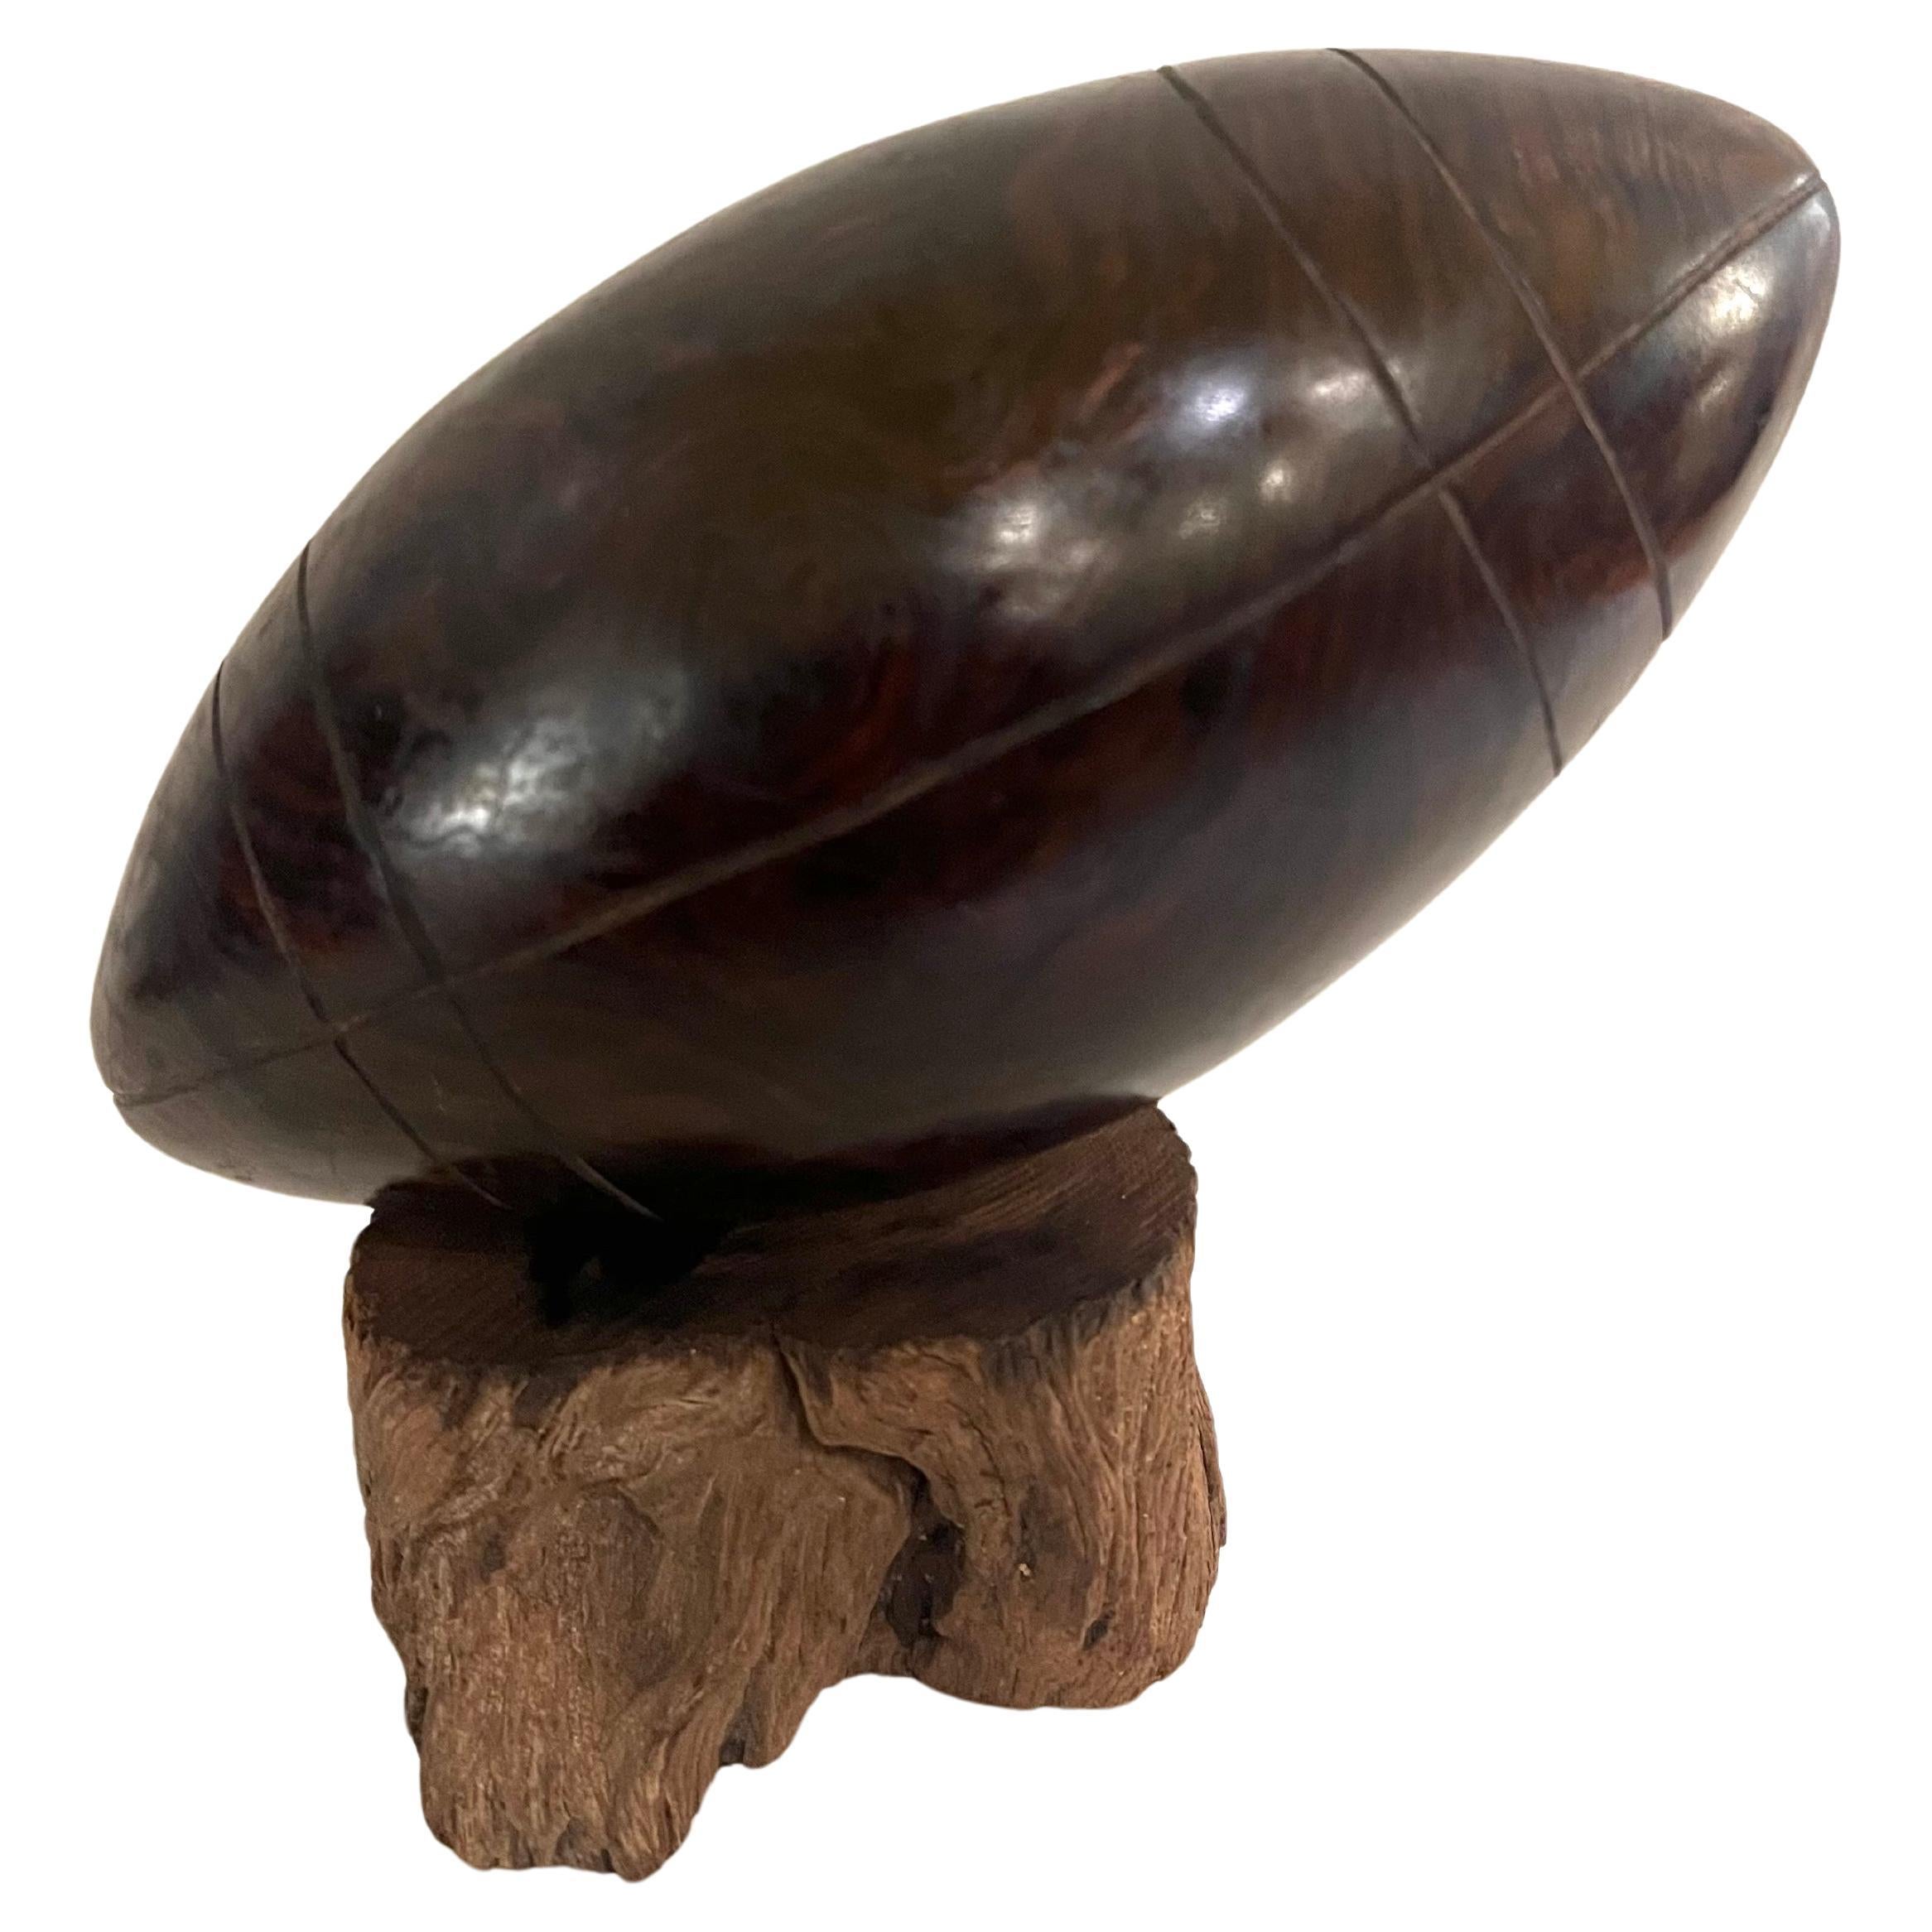 Sculpture classique de football américain en bois de fer massif sculpté à la main